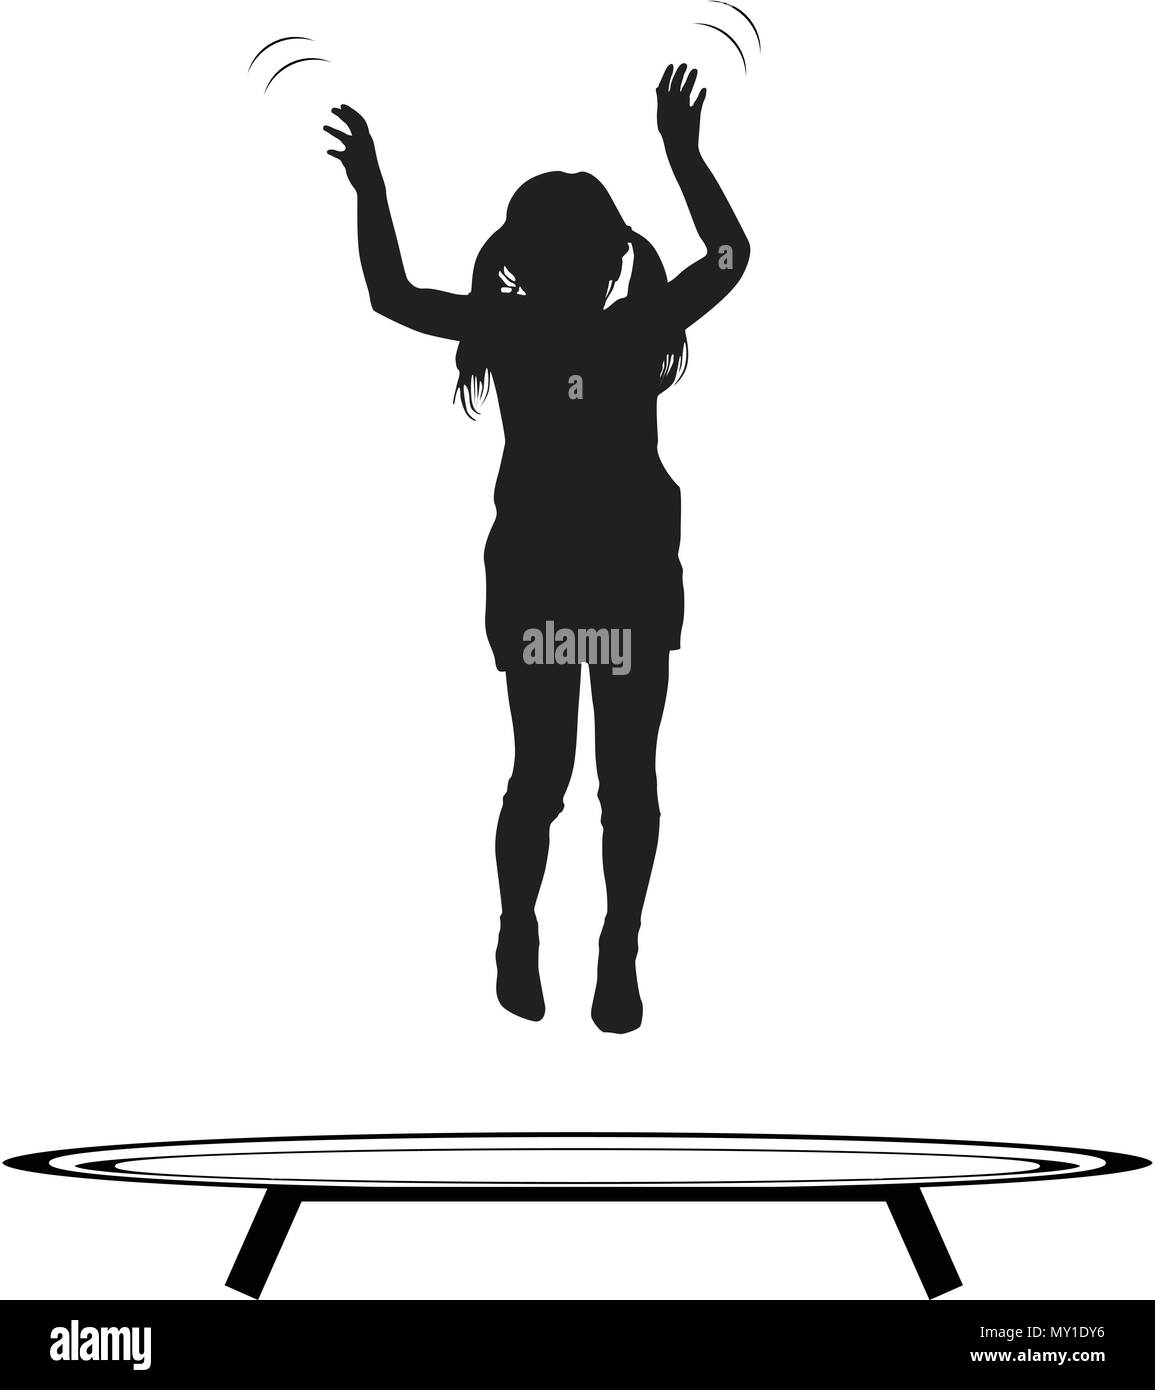 Trampoline saut man silhouette vecteur Illustration de Vecteur